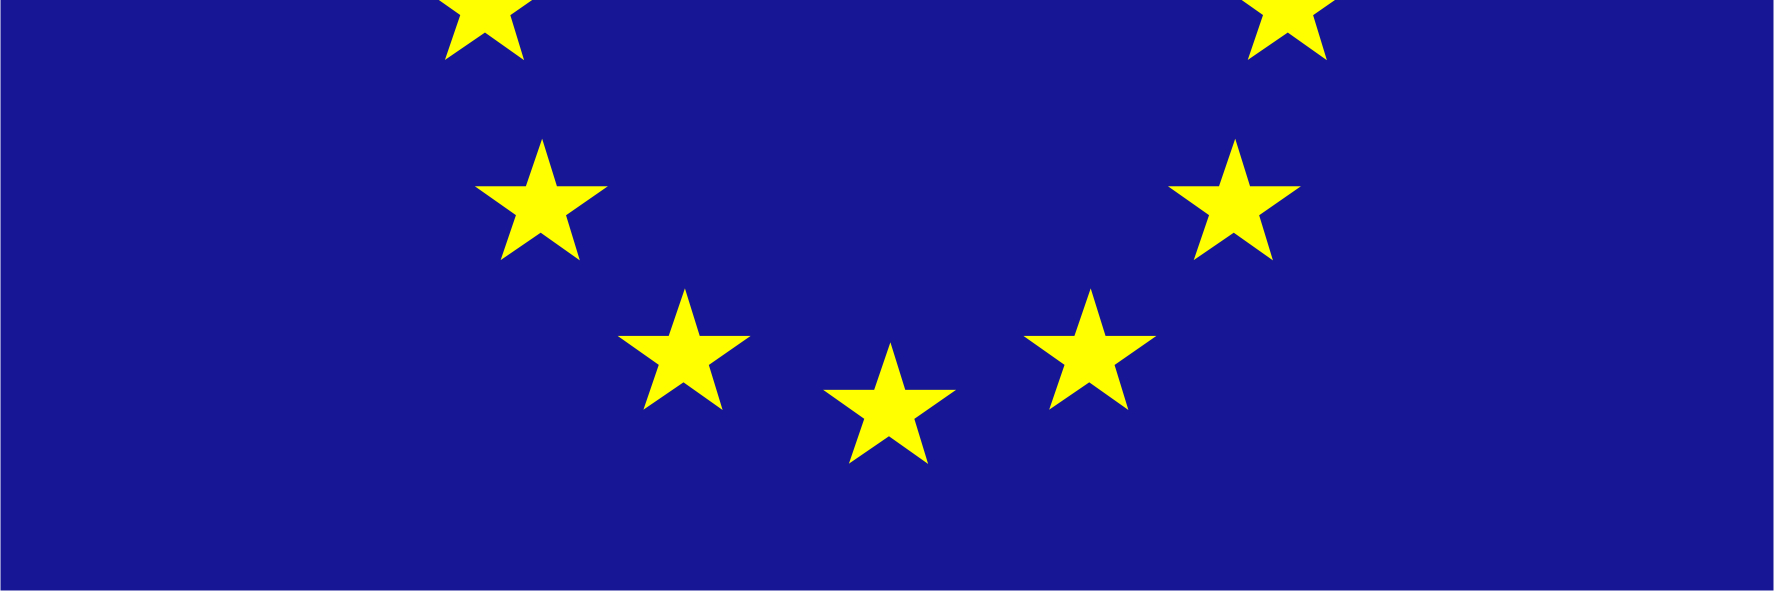 4. Az Európai Unió jelképei Az európai zászló Ez tehát az európai zászló, amely nem csupán az Európai Unió jelképe, hanem Európa népeinek szélesebb értelemben vett egységét és identitását is